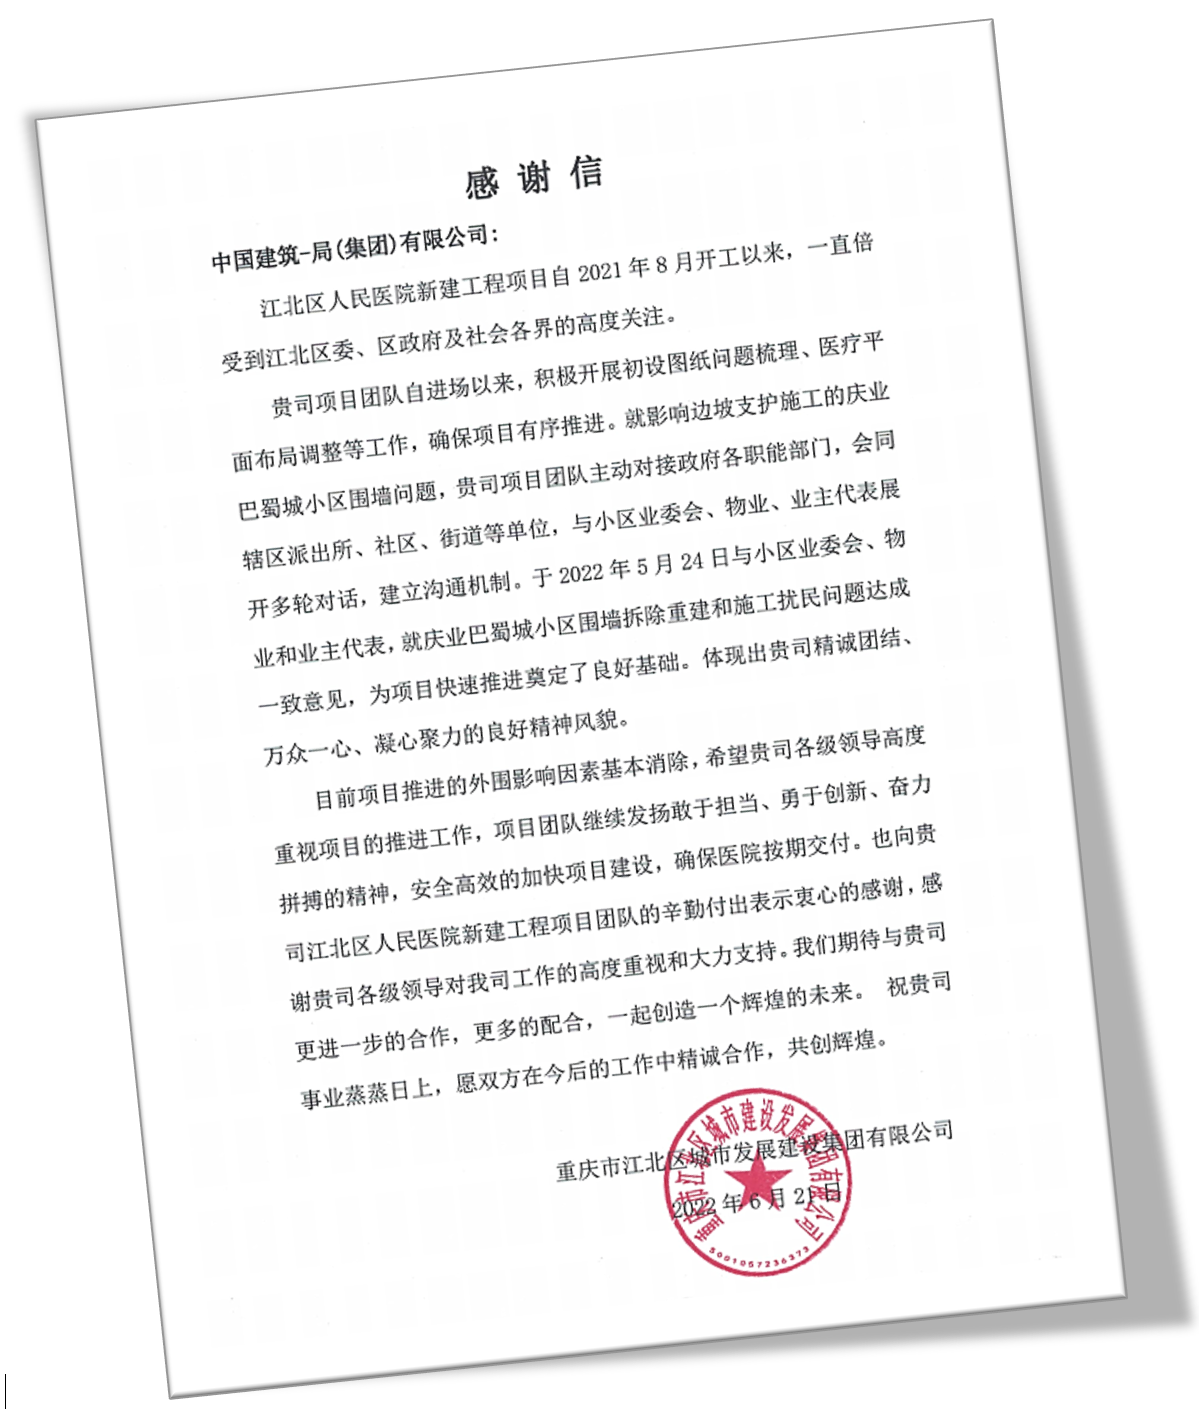 中建一局江北项目收到重庆市江北区城市发展建设集团有限公司感谢信